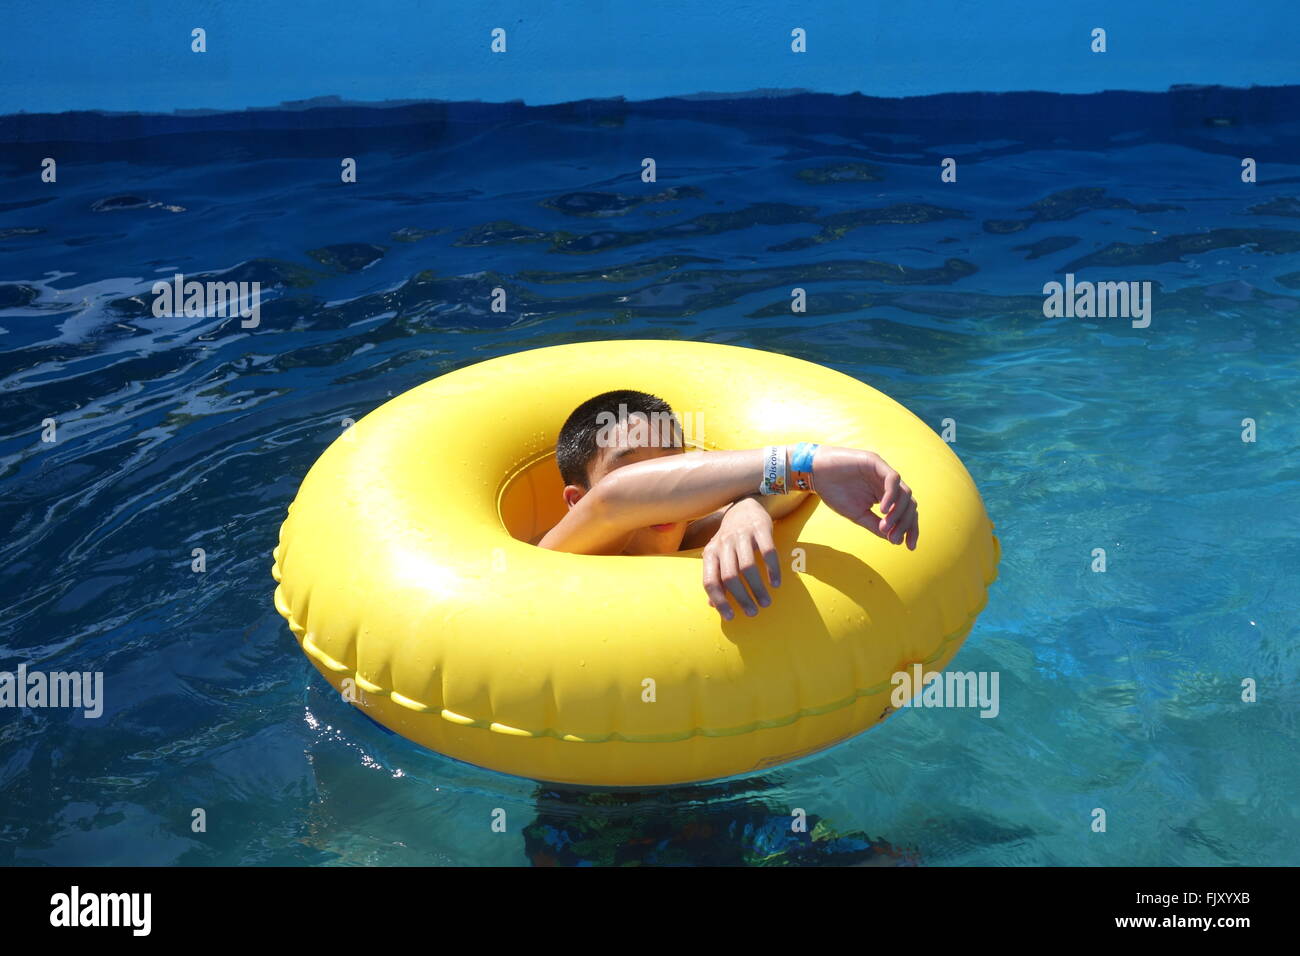 Jeune garçon asiatique flottant sur un tube d'eau Banque D'Images